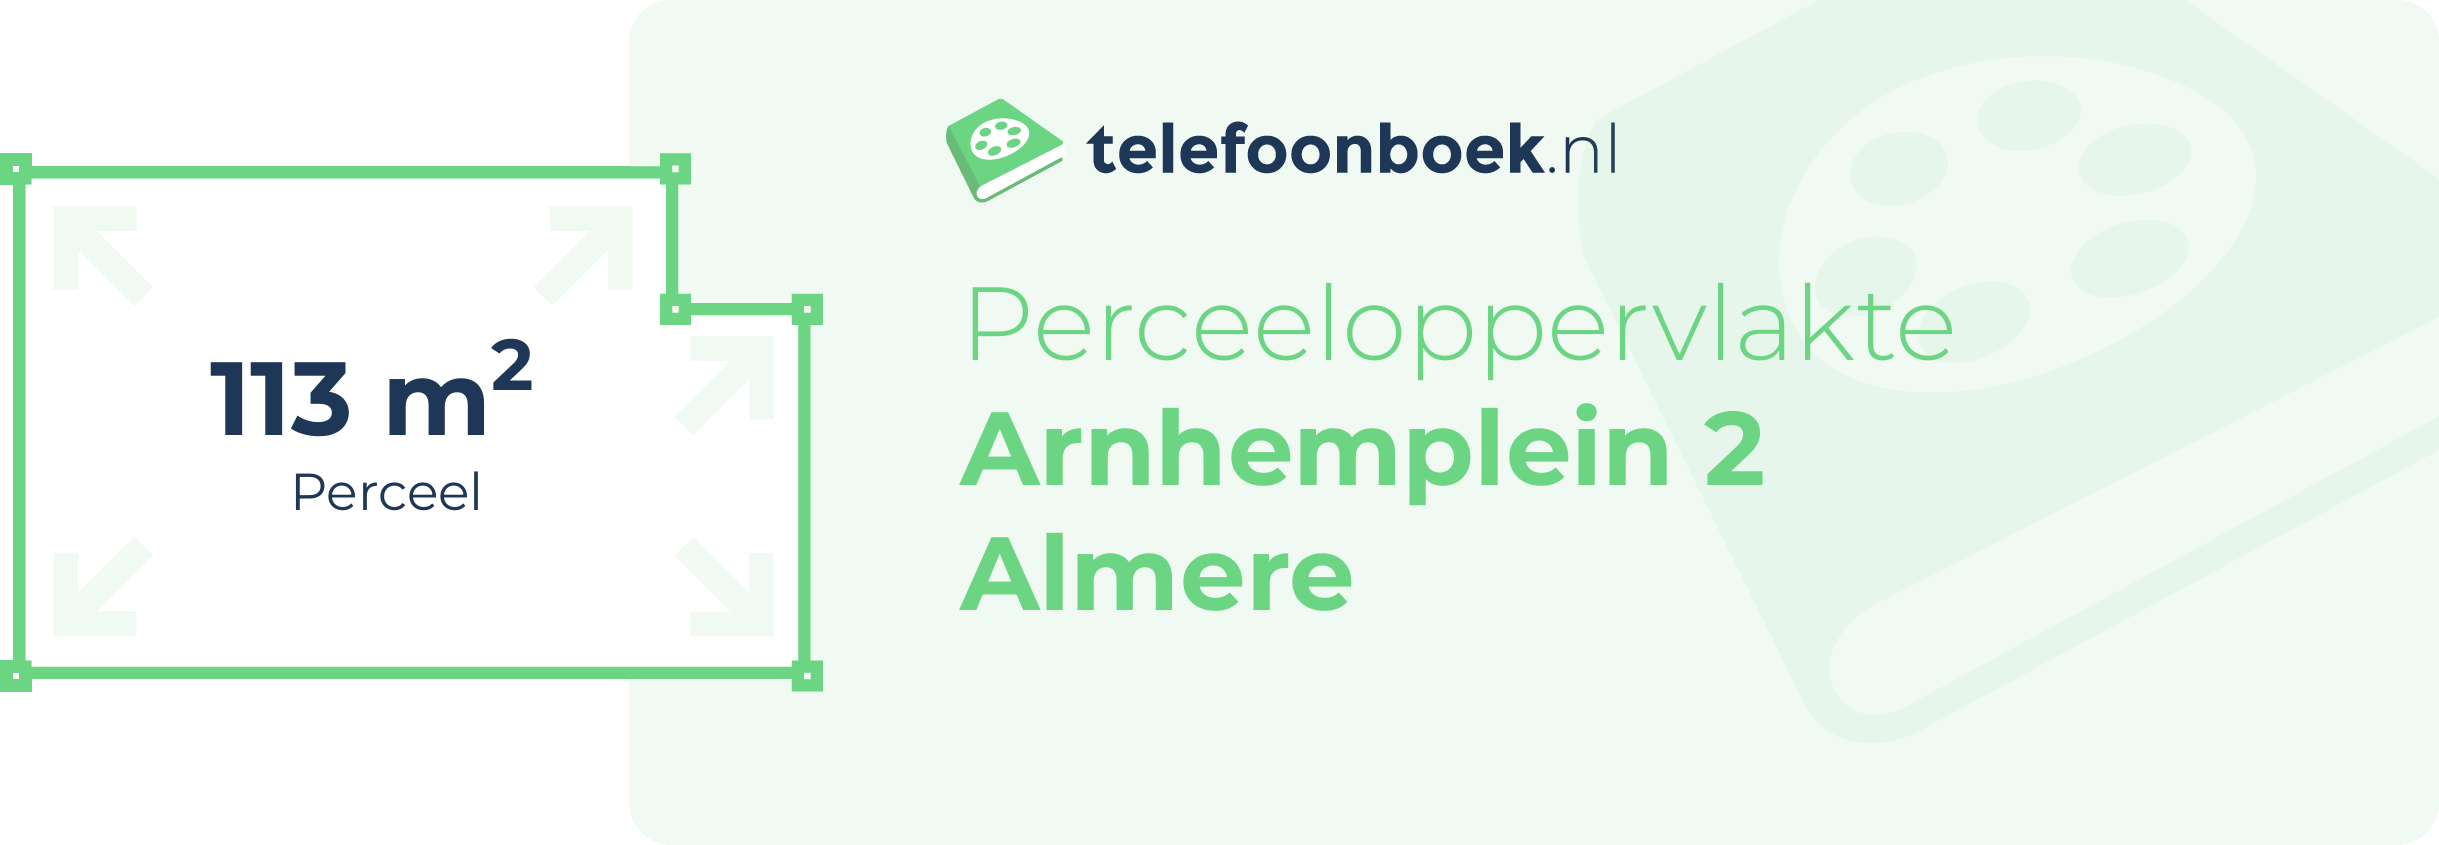 Perceeloppervlakte Arnhemplein 2 Almere